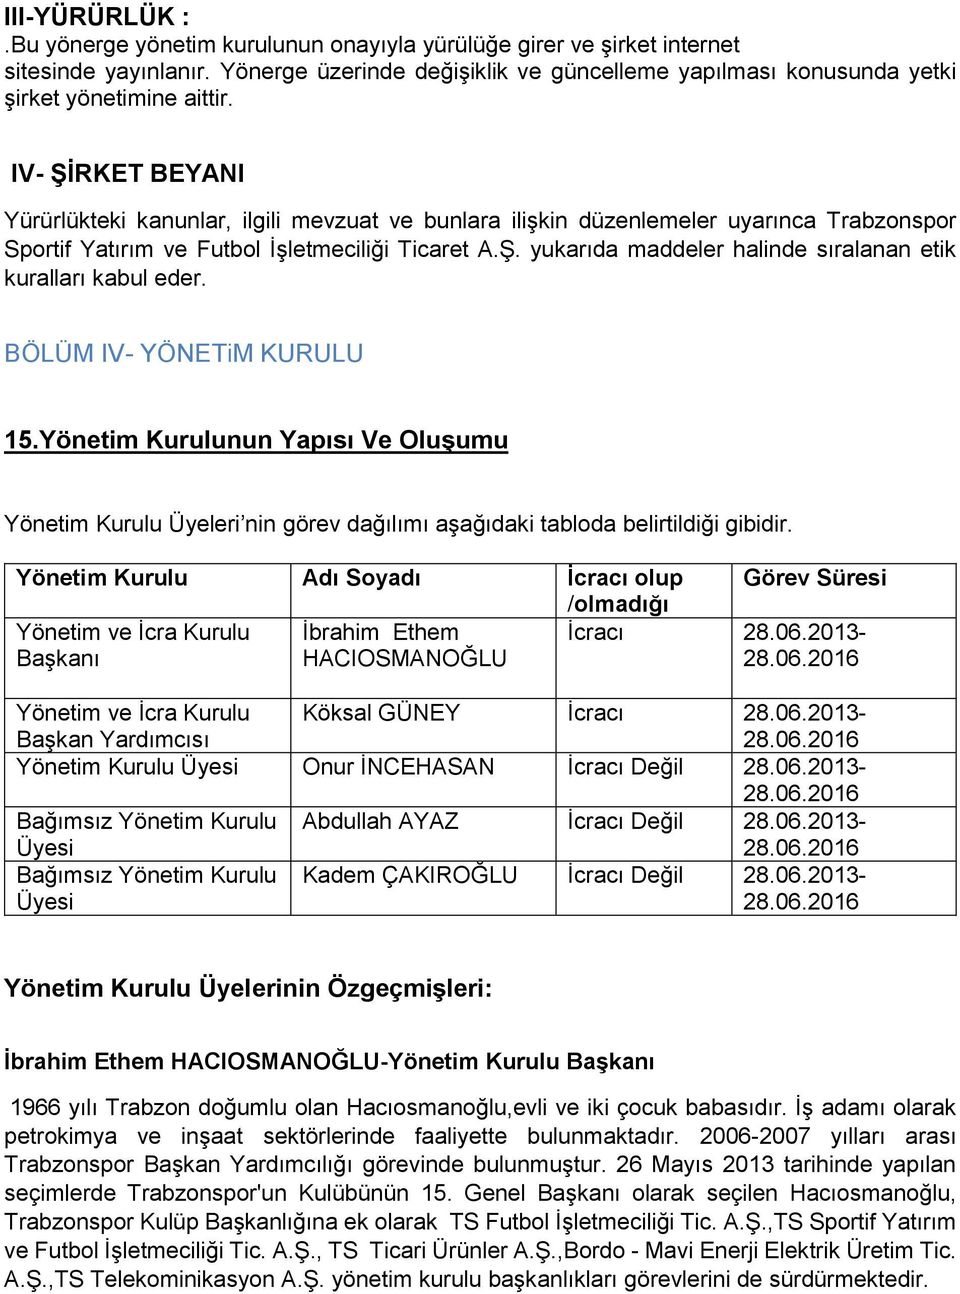 IV- ŞİRKET BEYANI Yürürlükteki kanunlar, ilgili mevzuat ve bunlara ilişkin düzenlemeler uyarınca Trabzonspor Sportif Yatırım ve Futbol İşletmeciliği Ticaret A.Ş. yukarıda maddeler halinde sıralanan etik kuralları kabul eder.